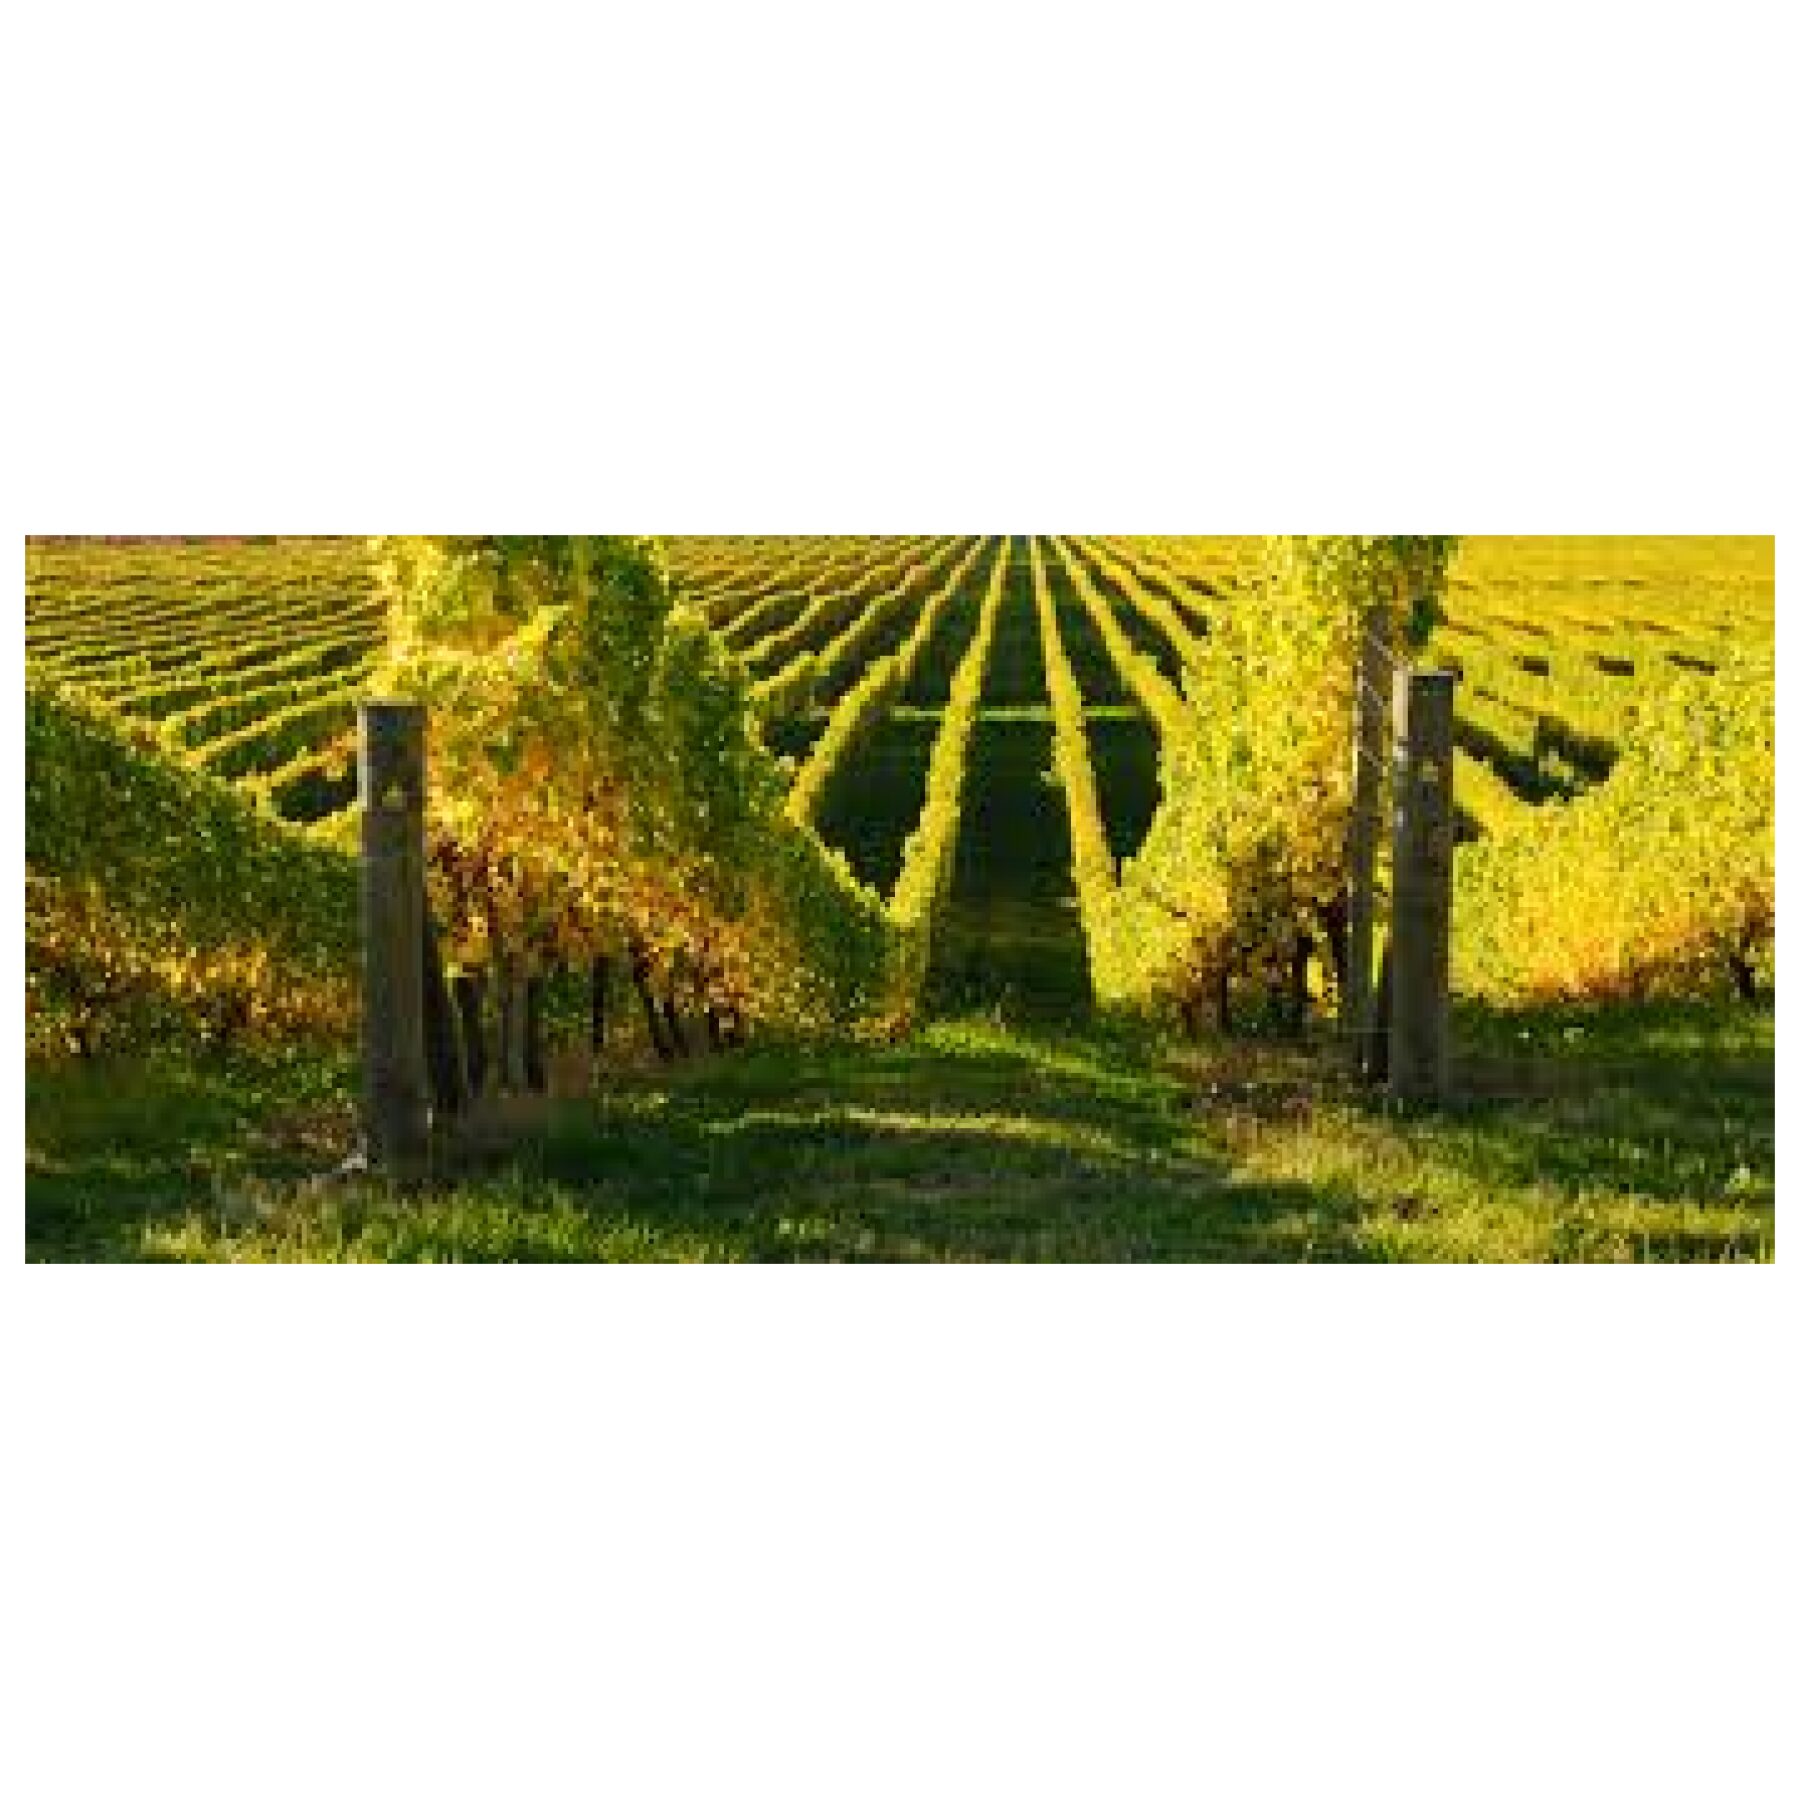 Quady Winery Vya Sweet Vermouth Usa Kalifornien Hangemacht Weinbasis Weinberg Weingut